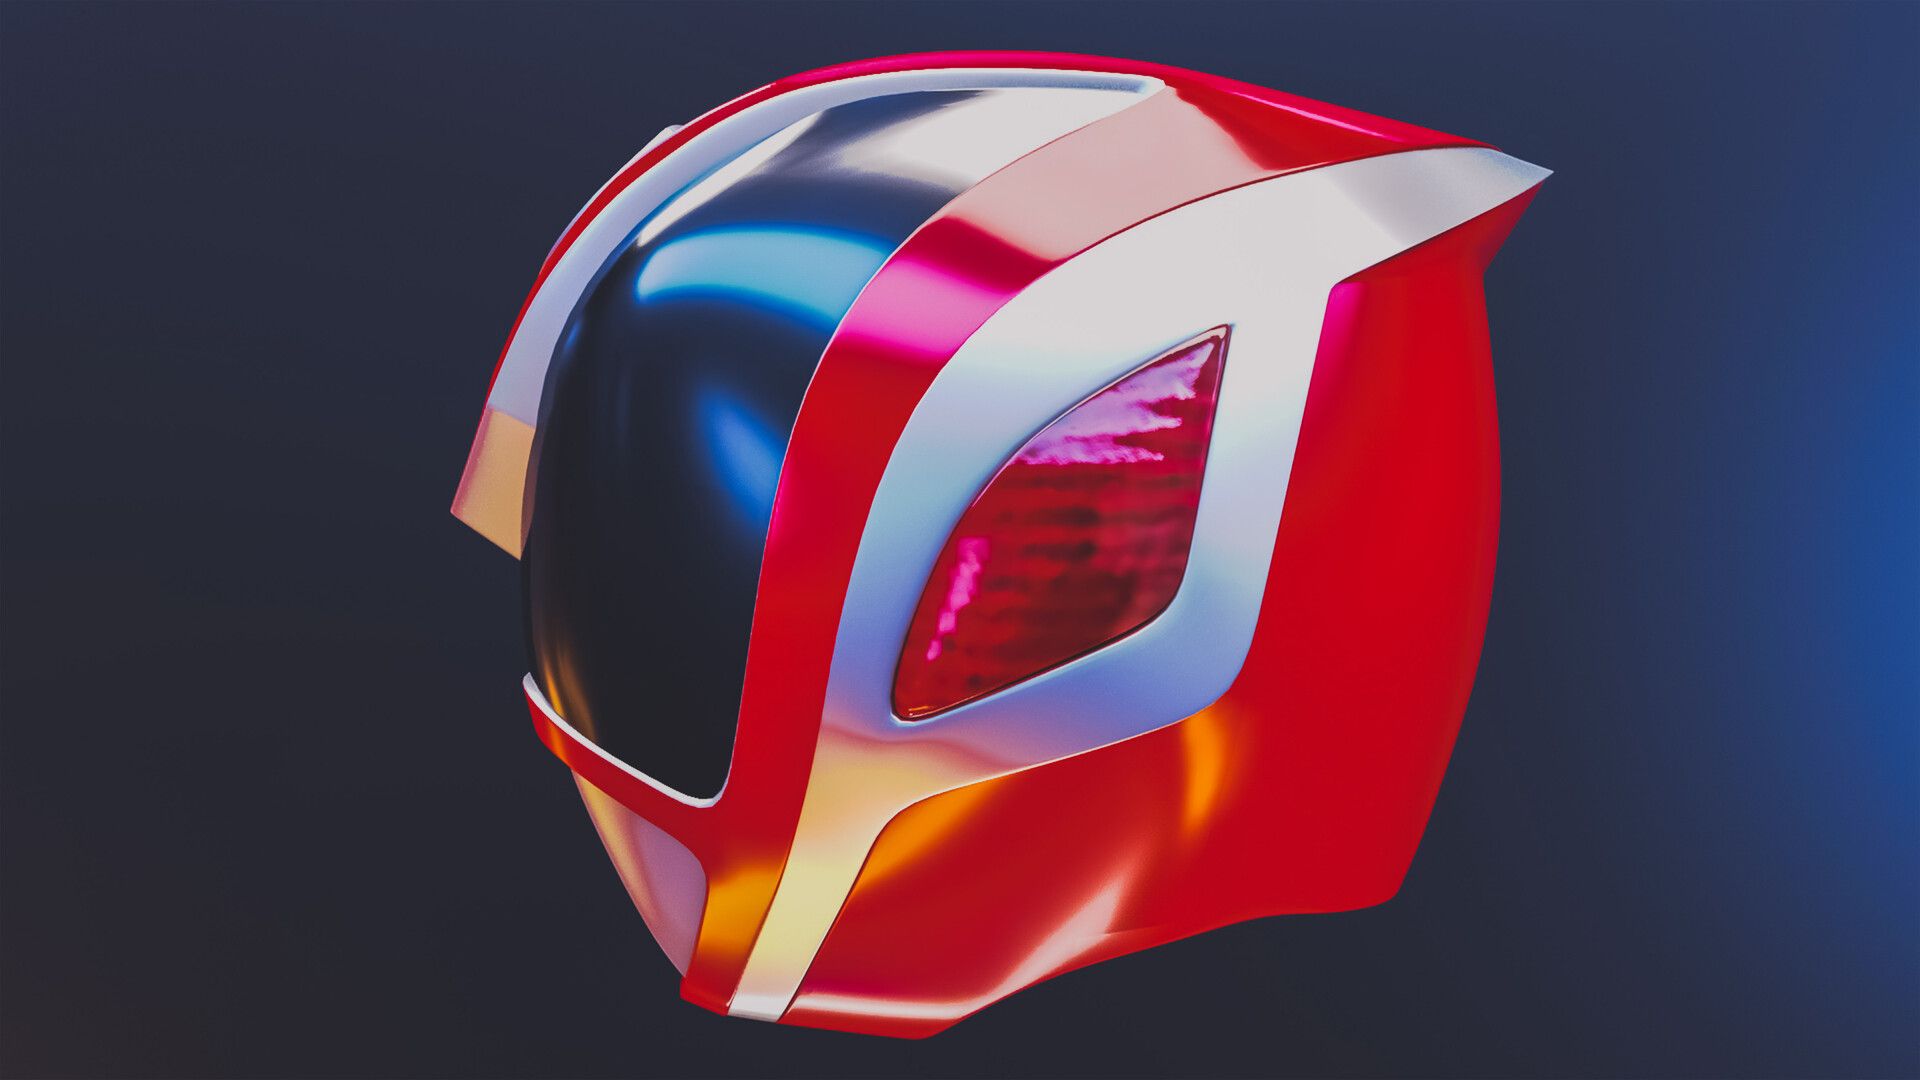 Spd Red Power Ranger Helmet 3D model, Viraj Shinde